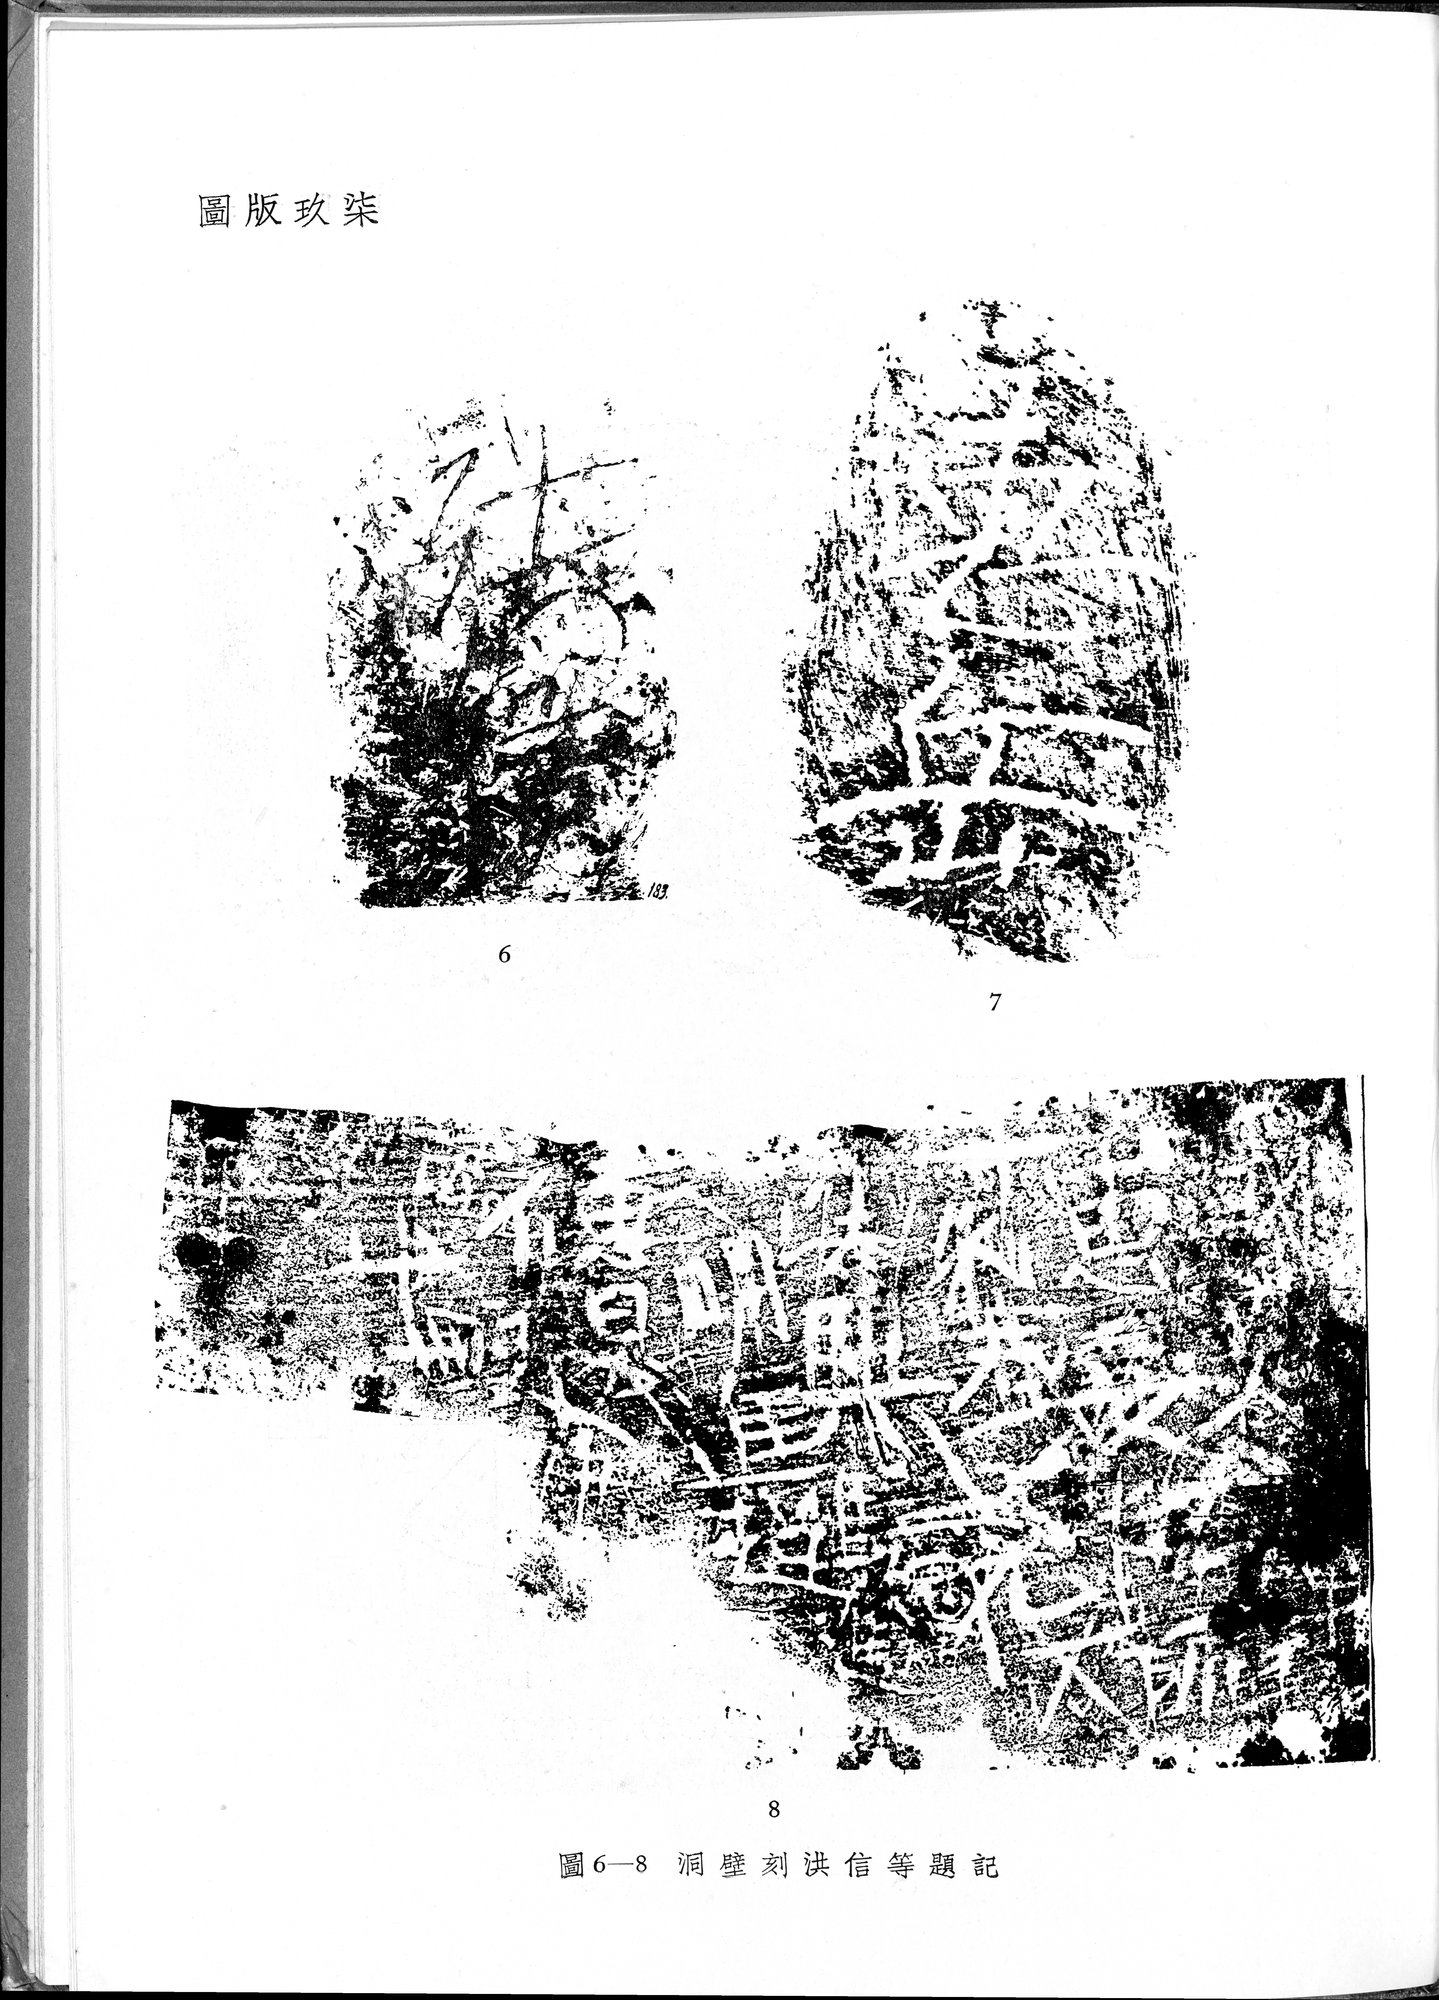 塔里木盆地考古記 : vol.1 / Page 331 (Grayscale High Resolution Image)